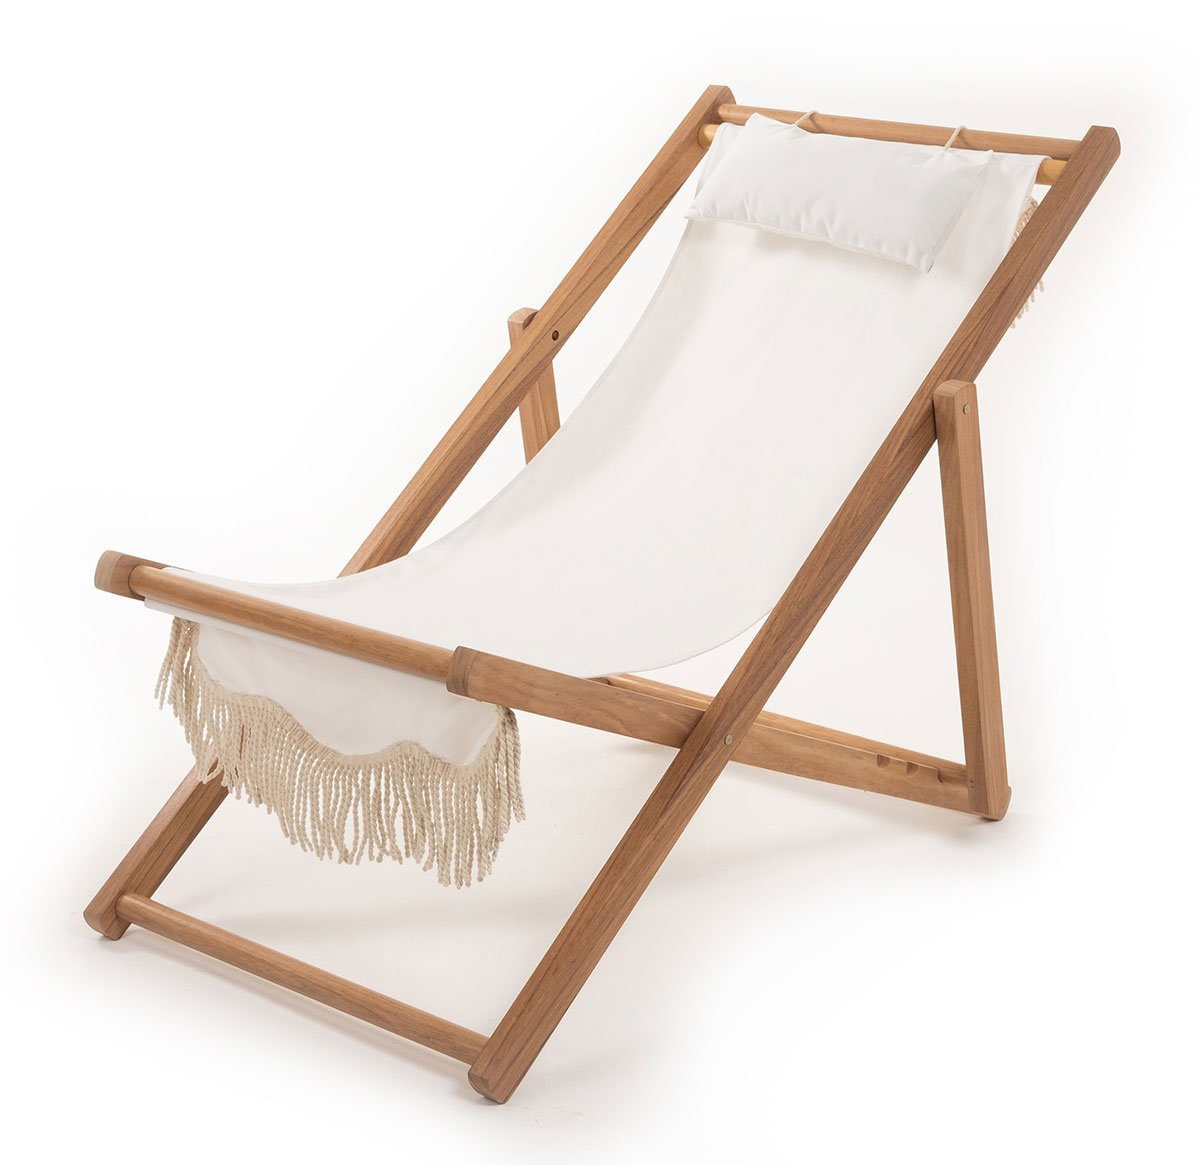 Sling - Beach chair